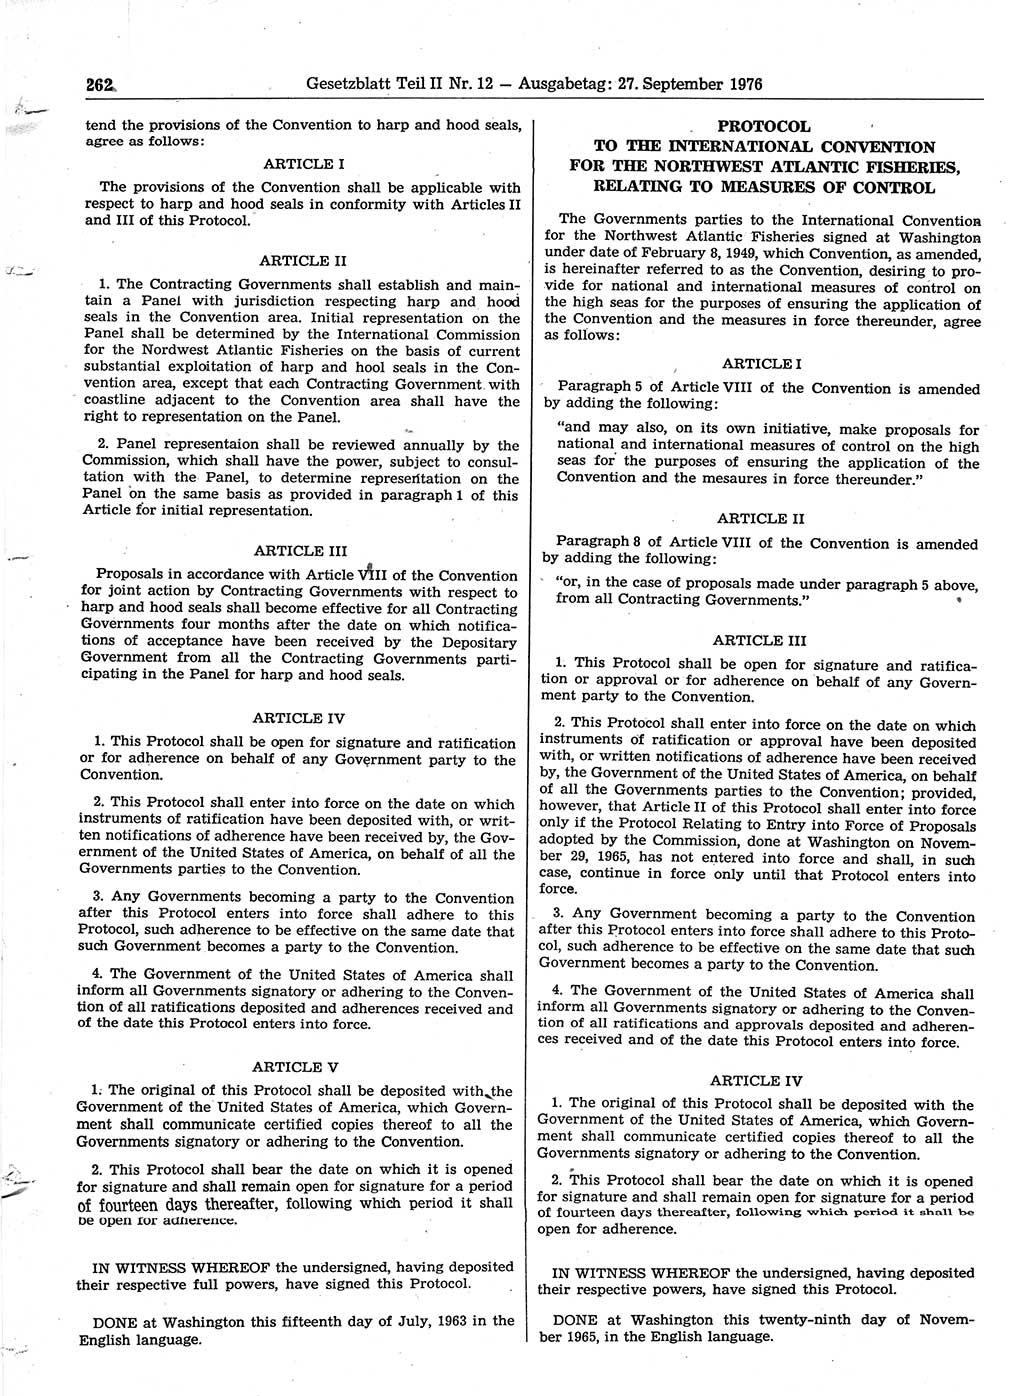 Gesetzblatt (GBl.) der Deutschen Demokratischen Republik (DDR) Teil ⅠⅠ 1976, Seite 262 (GBl. DDR ⅠⅠ 1976, S. 262)